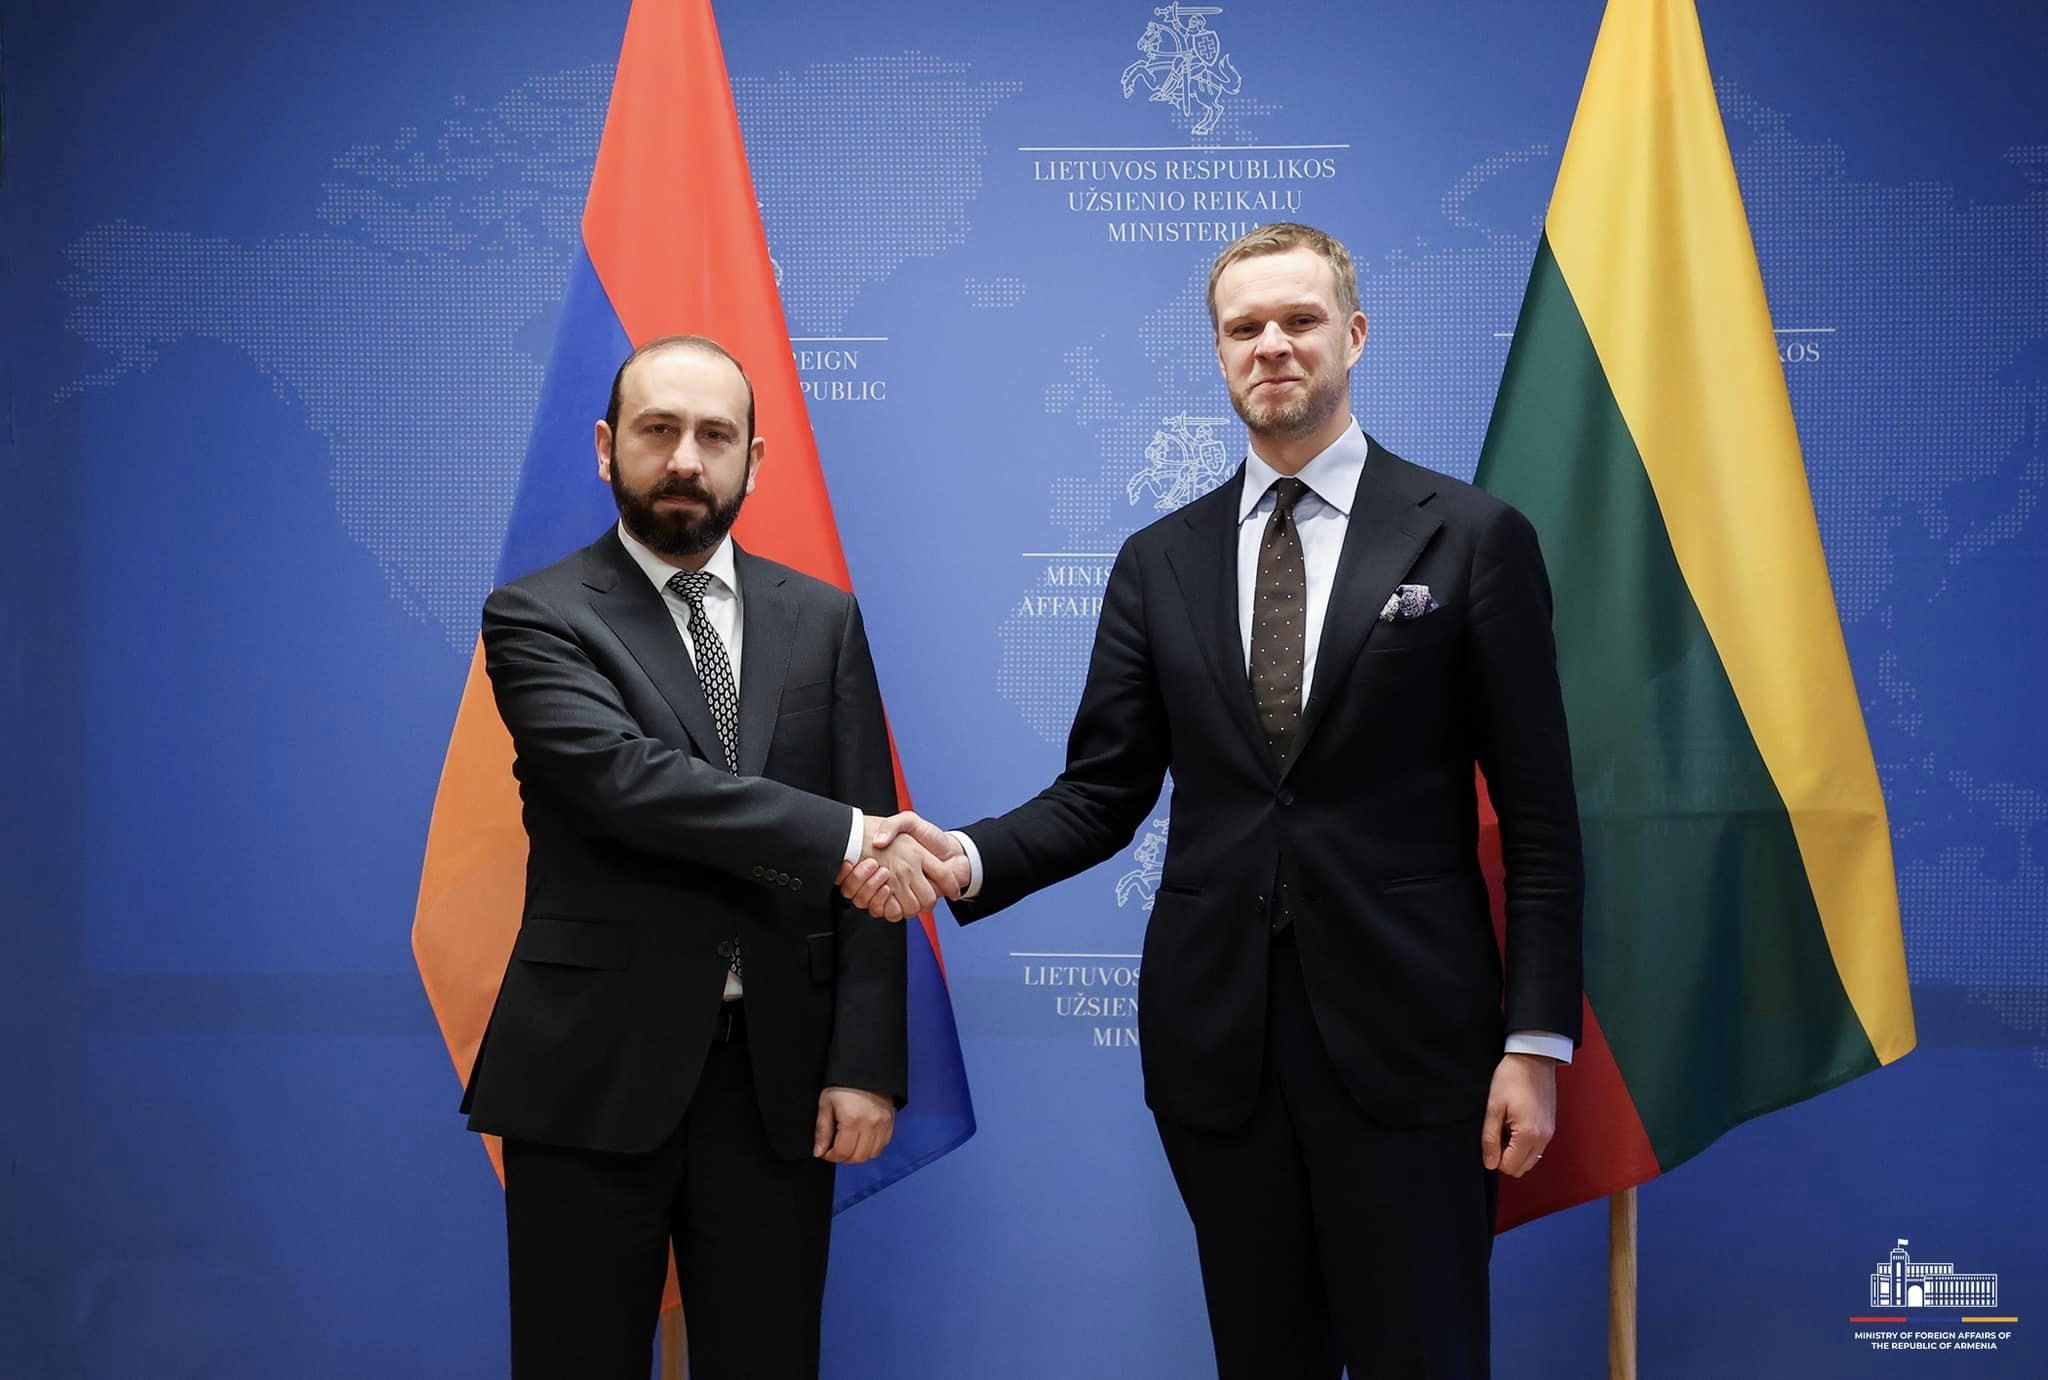 Հայաստանն ու Լիտվան ԵՄ-ին առնչվող հարցերում համագործակցության վերաբերյալ հուշագիր են ստորագրել